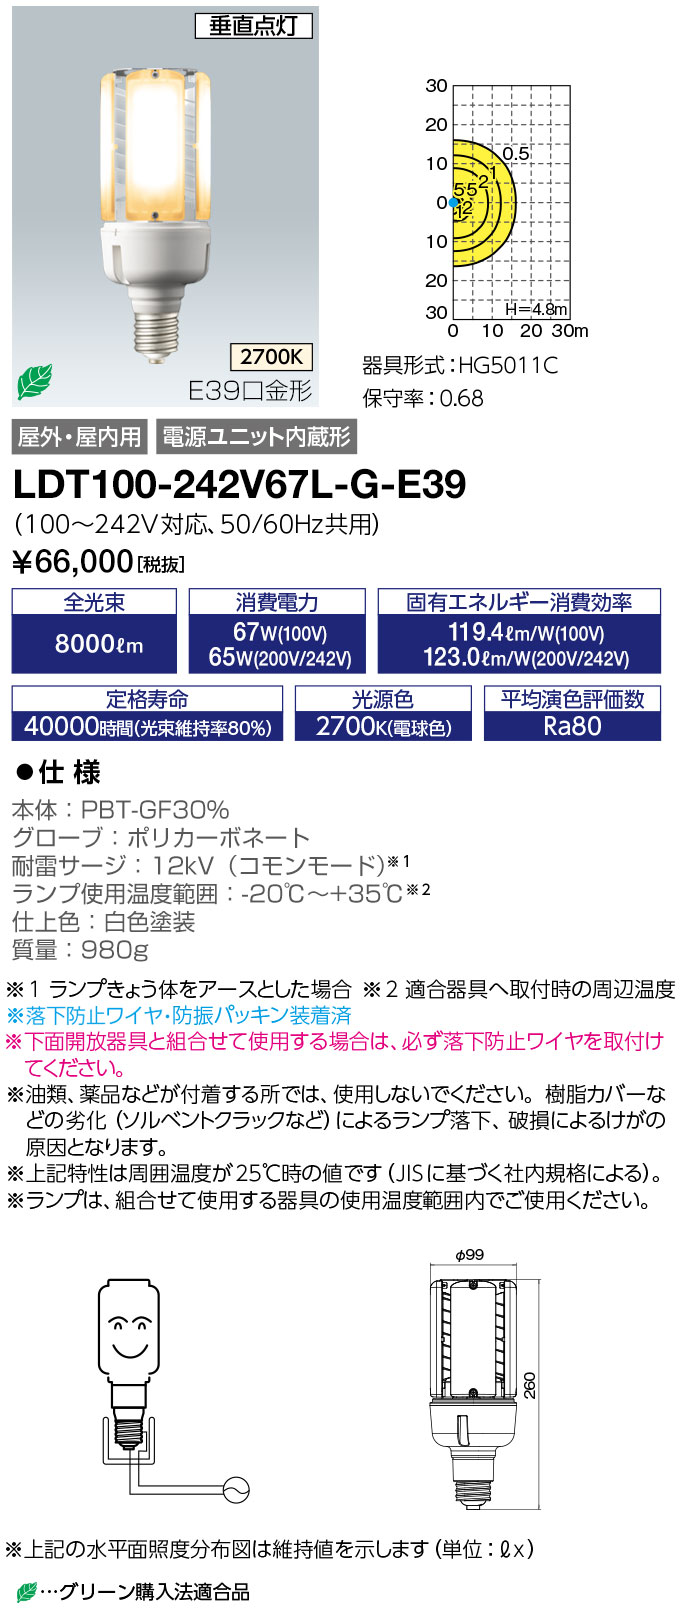 LDT100-242V67L-G-E39